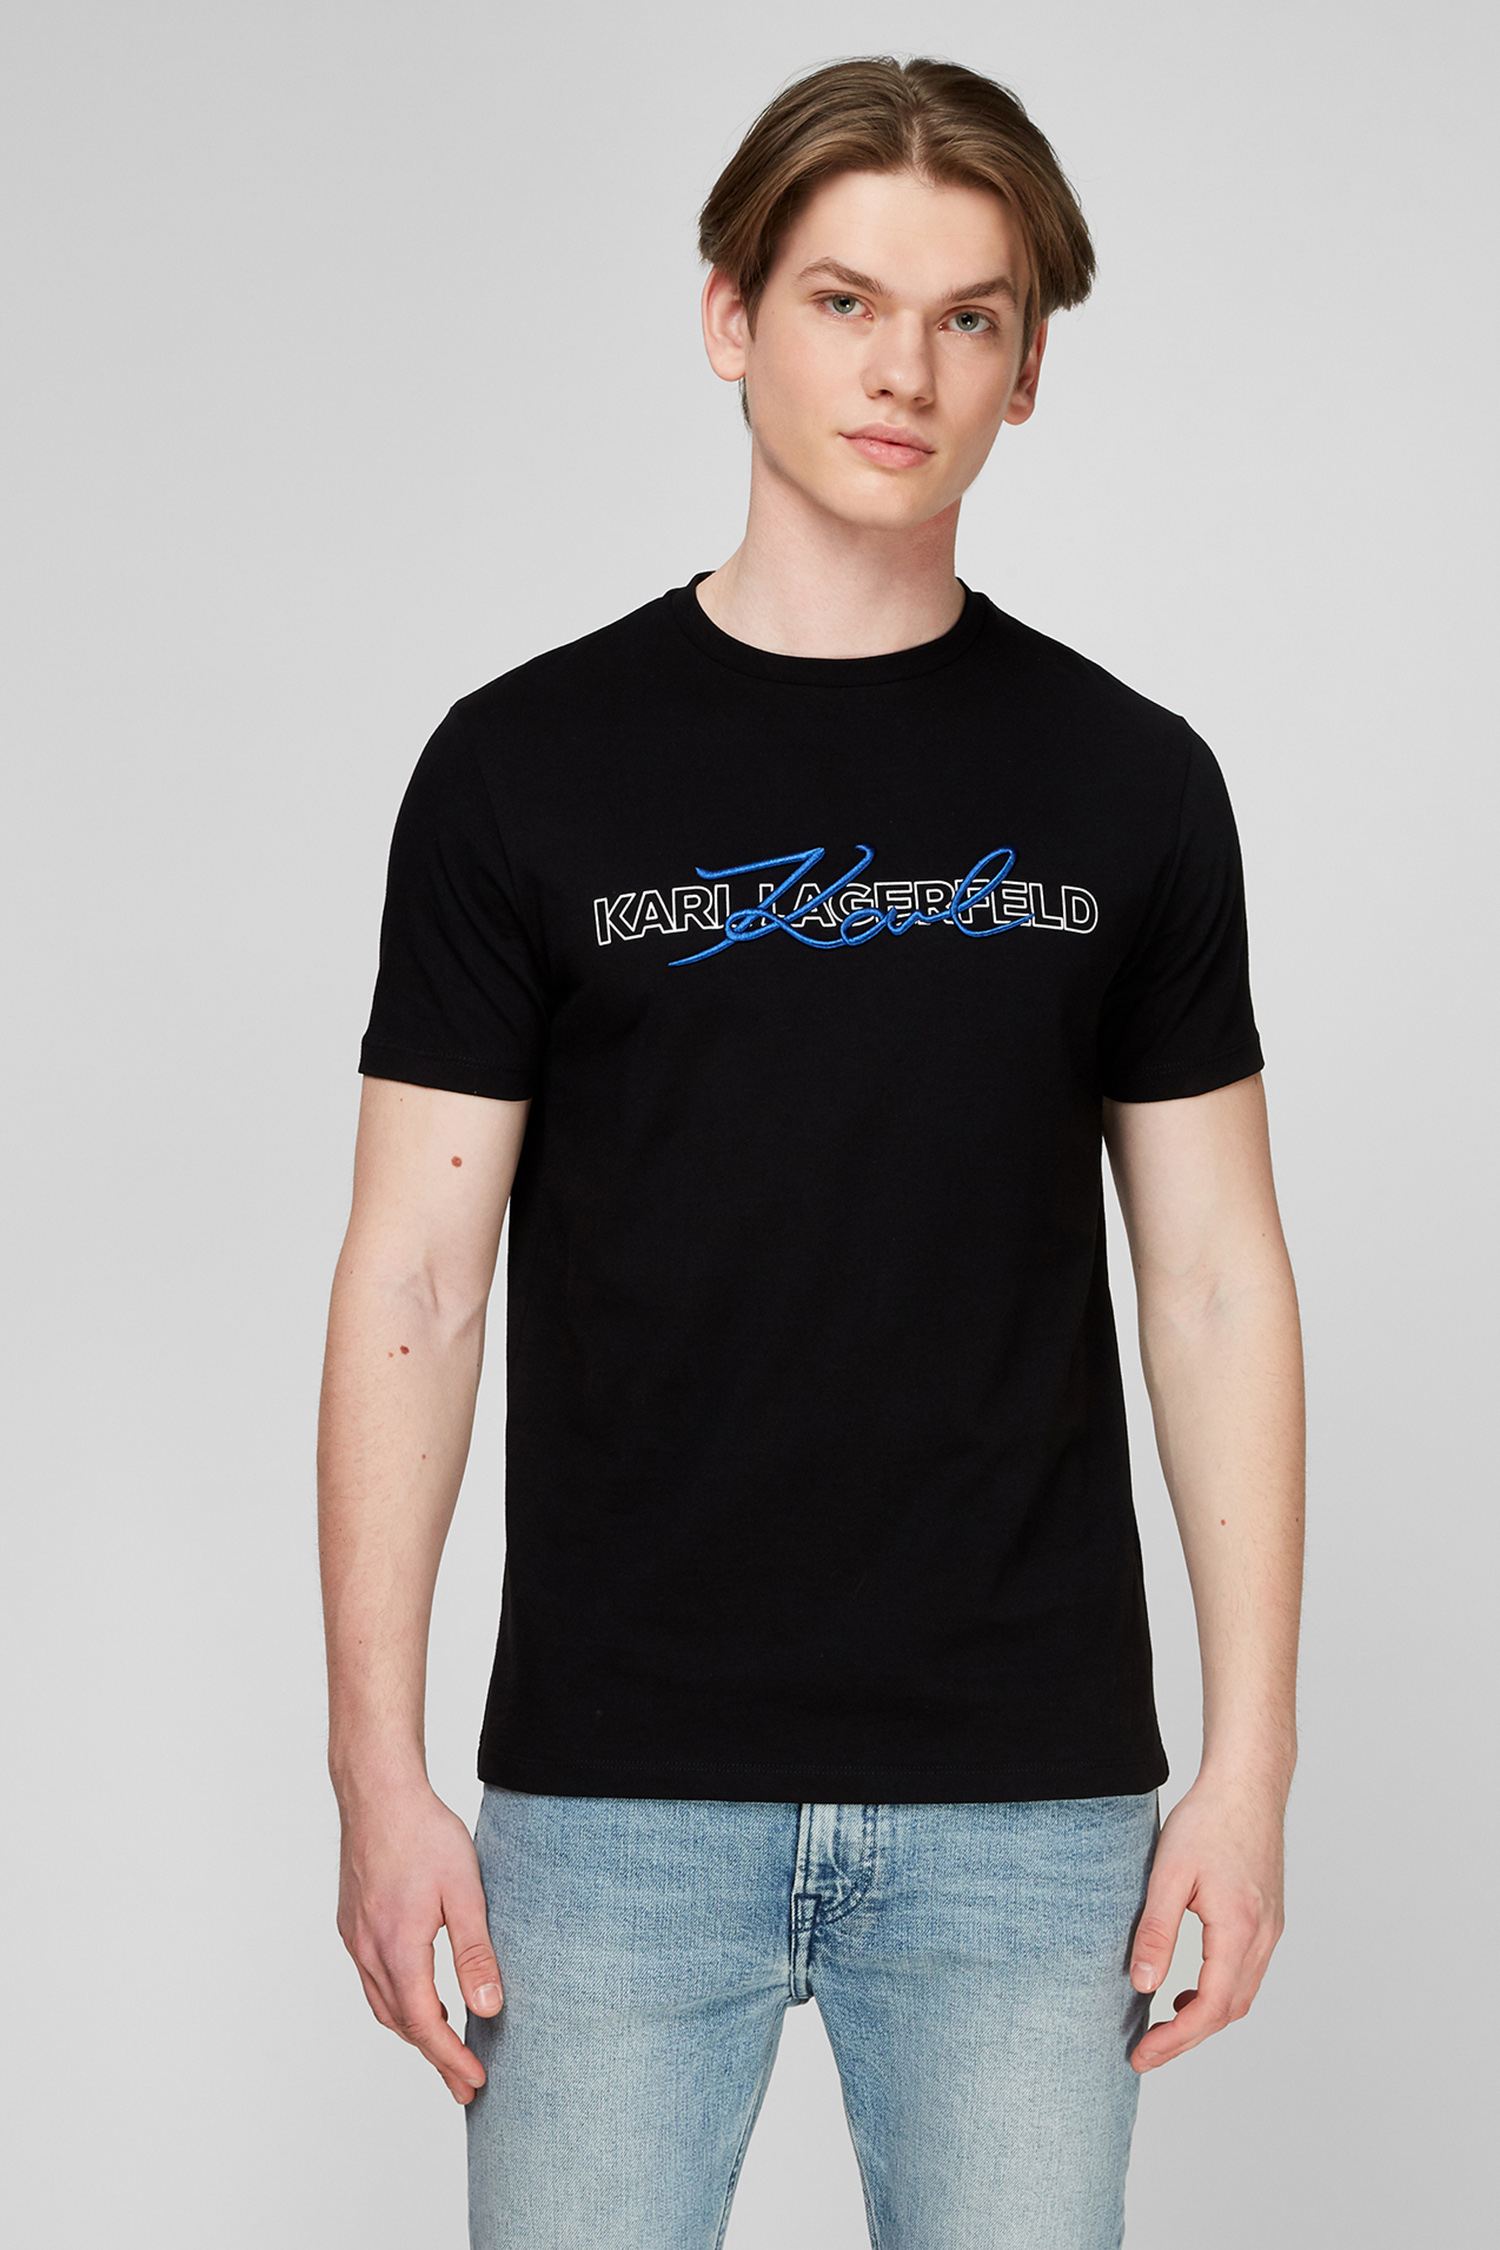 Чорна футболка для хлопців Karl Lagerfeld 511225.755053;990